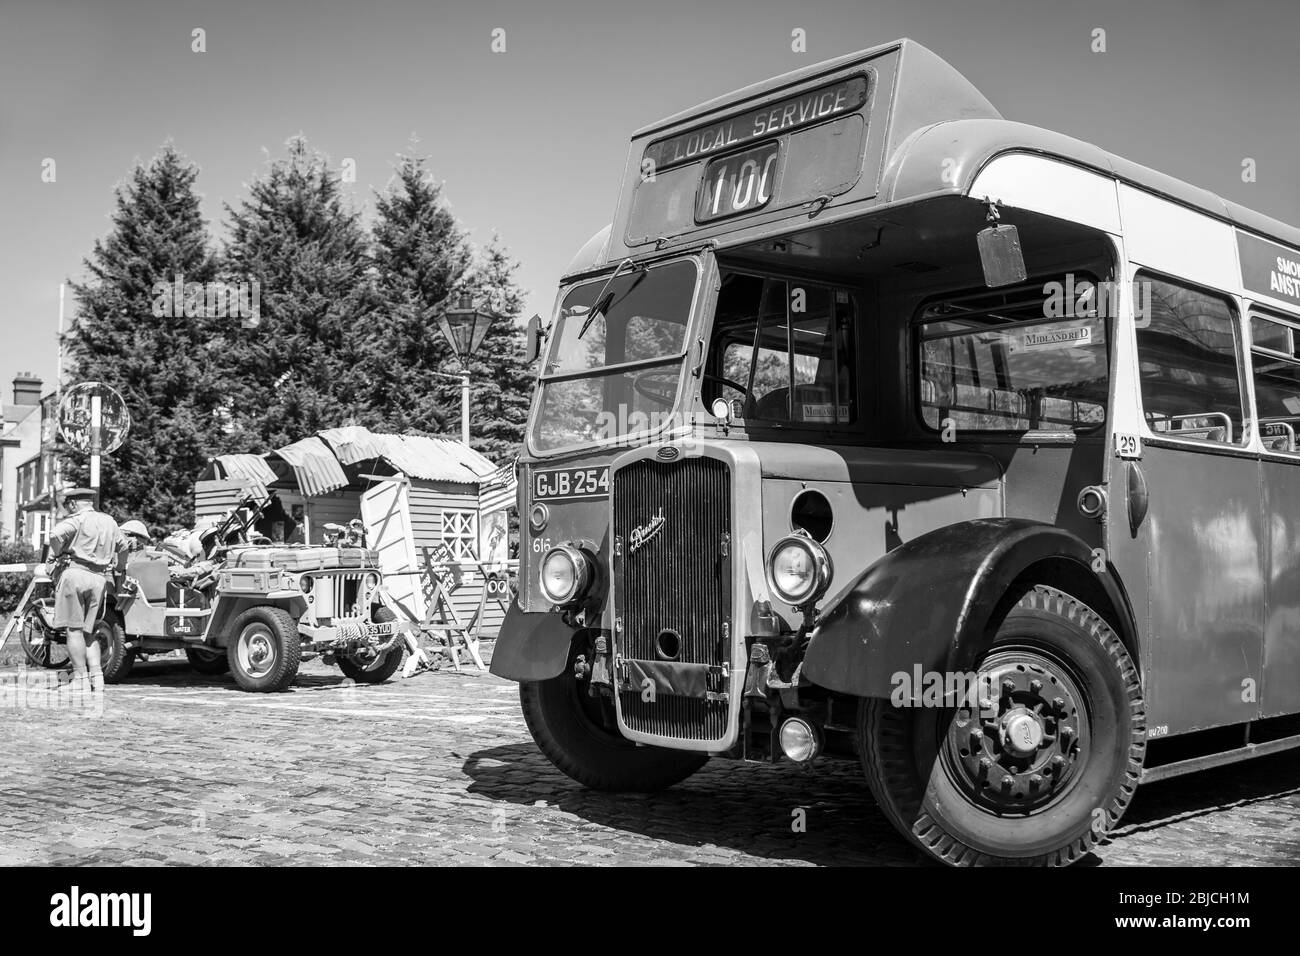 Vista frontale monocromatica dell'autobus vintage della Thames Valley, Bristol 616 parcheggiato al Severn Valley Railway, evento estivo della seconda guerra mondiale degli anni '40, Kidderminster, Regno Unito. Foto Stock